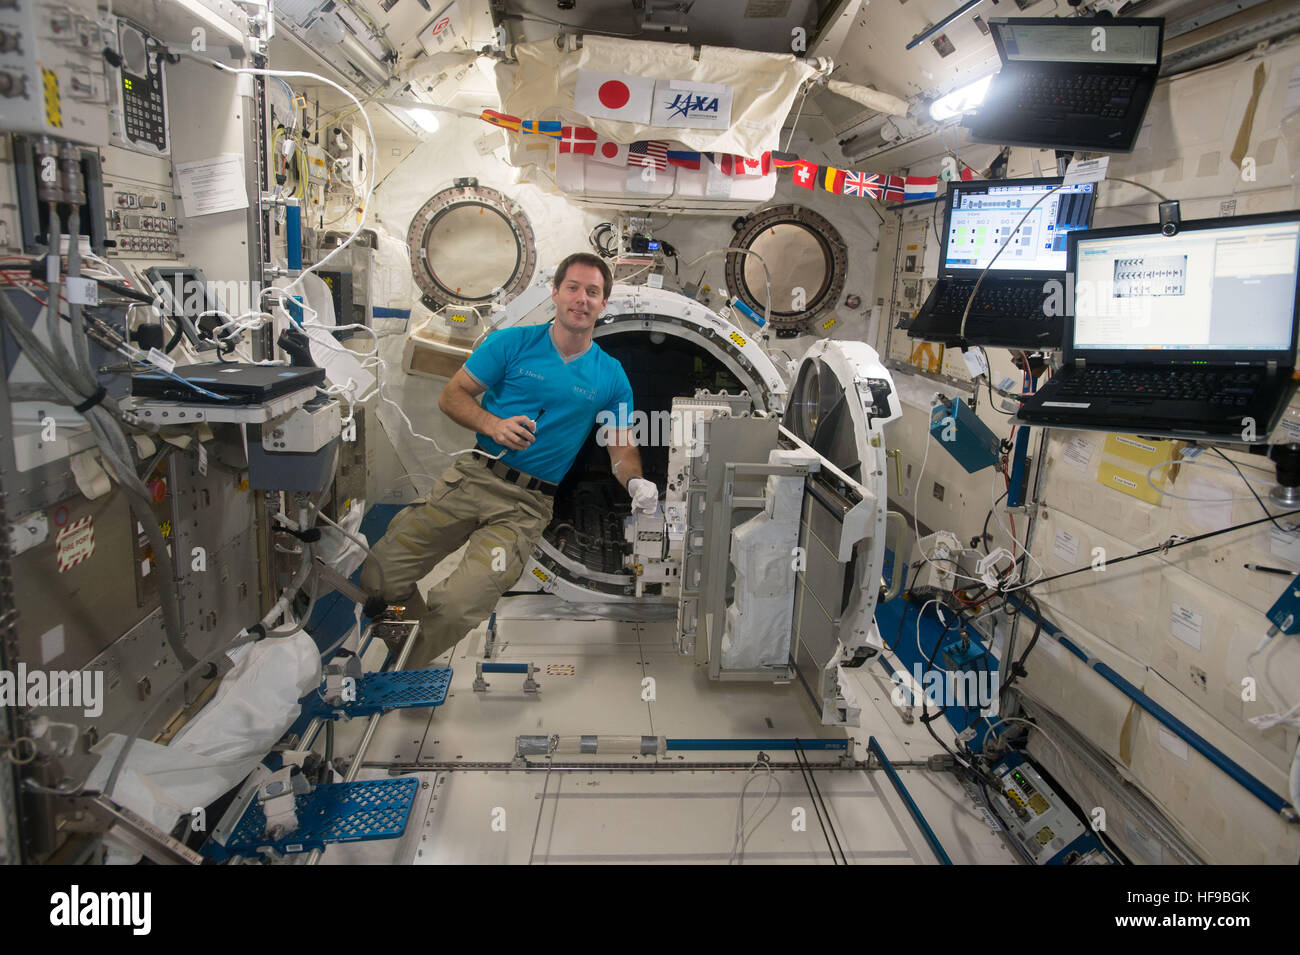 NASA-Expedition 50-51 erstklassige Crew Mitglied französischer Astronaut Thomas Pesquet von der European Space Agency schwebt neben der Schleuse im japanisches Experiment-Modul an Bord der internationalen Raumstation ISS 7. Dezember 2016 in der Erdumlaufbahn. Stockfoto